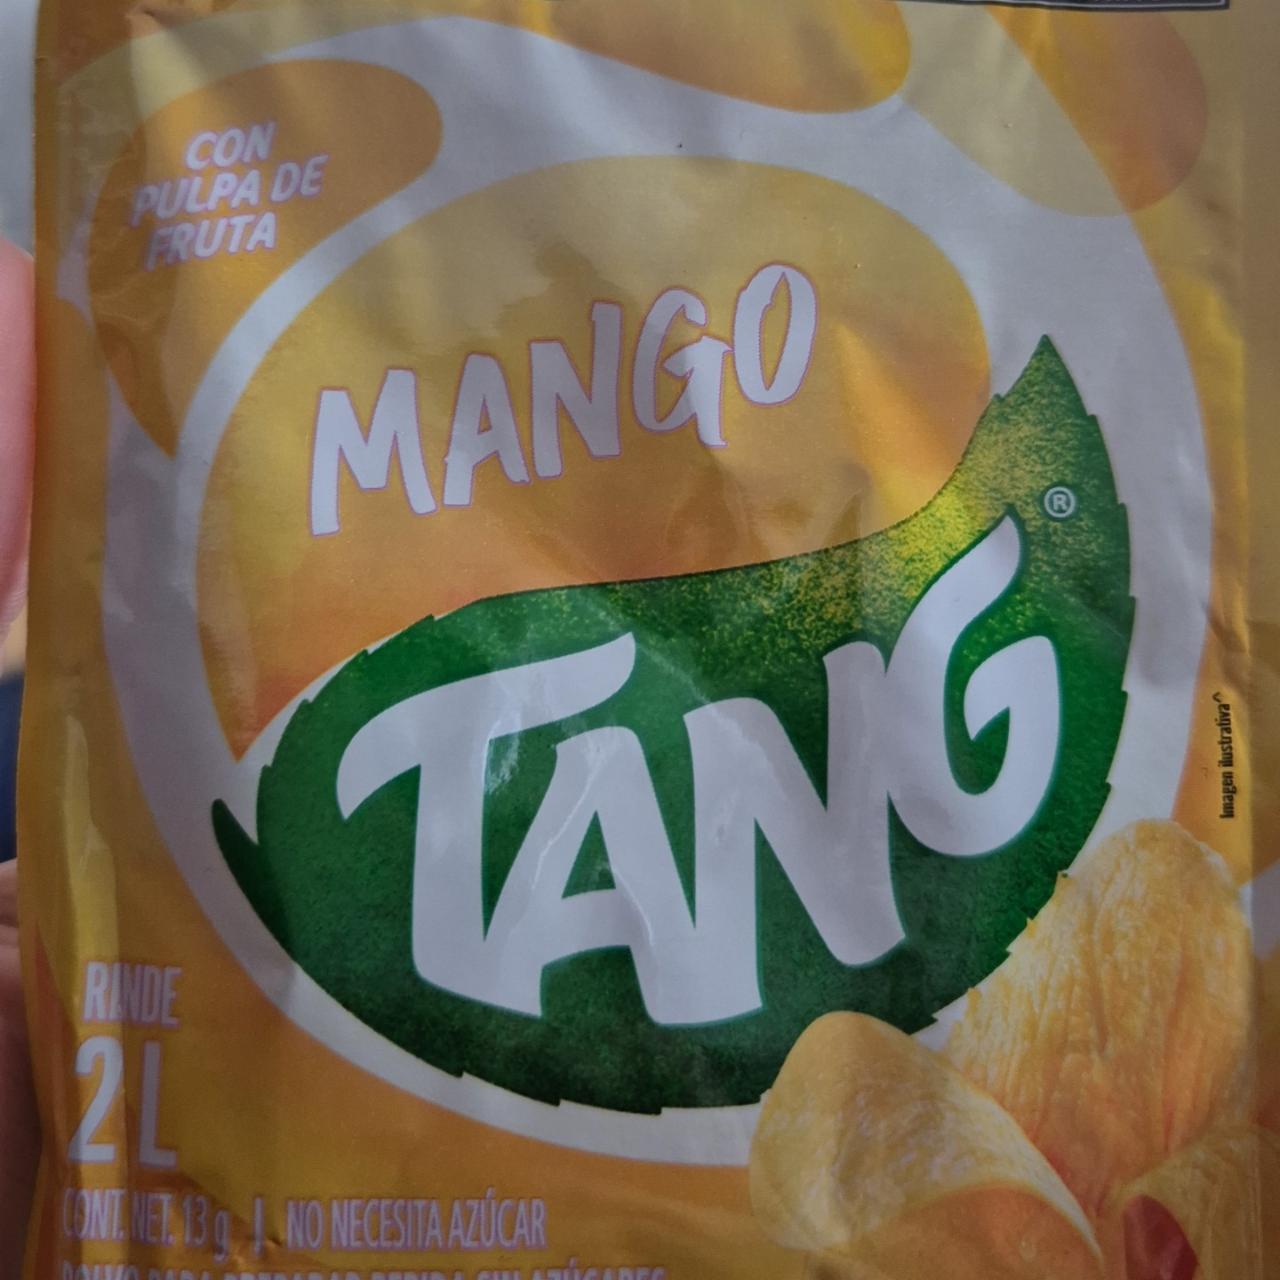 Fotografie - mango instatní nápoj TANG